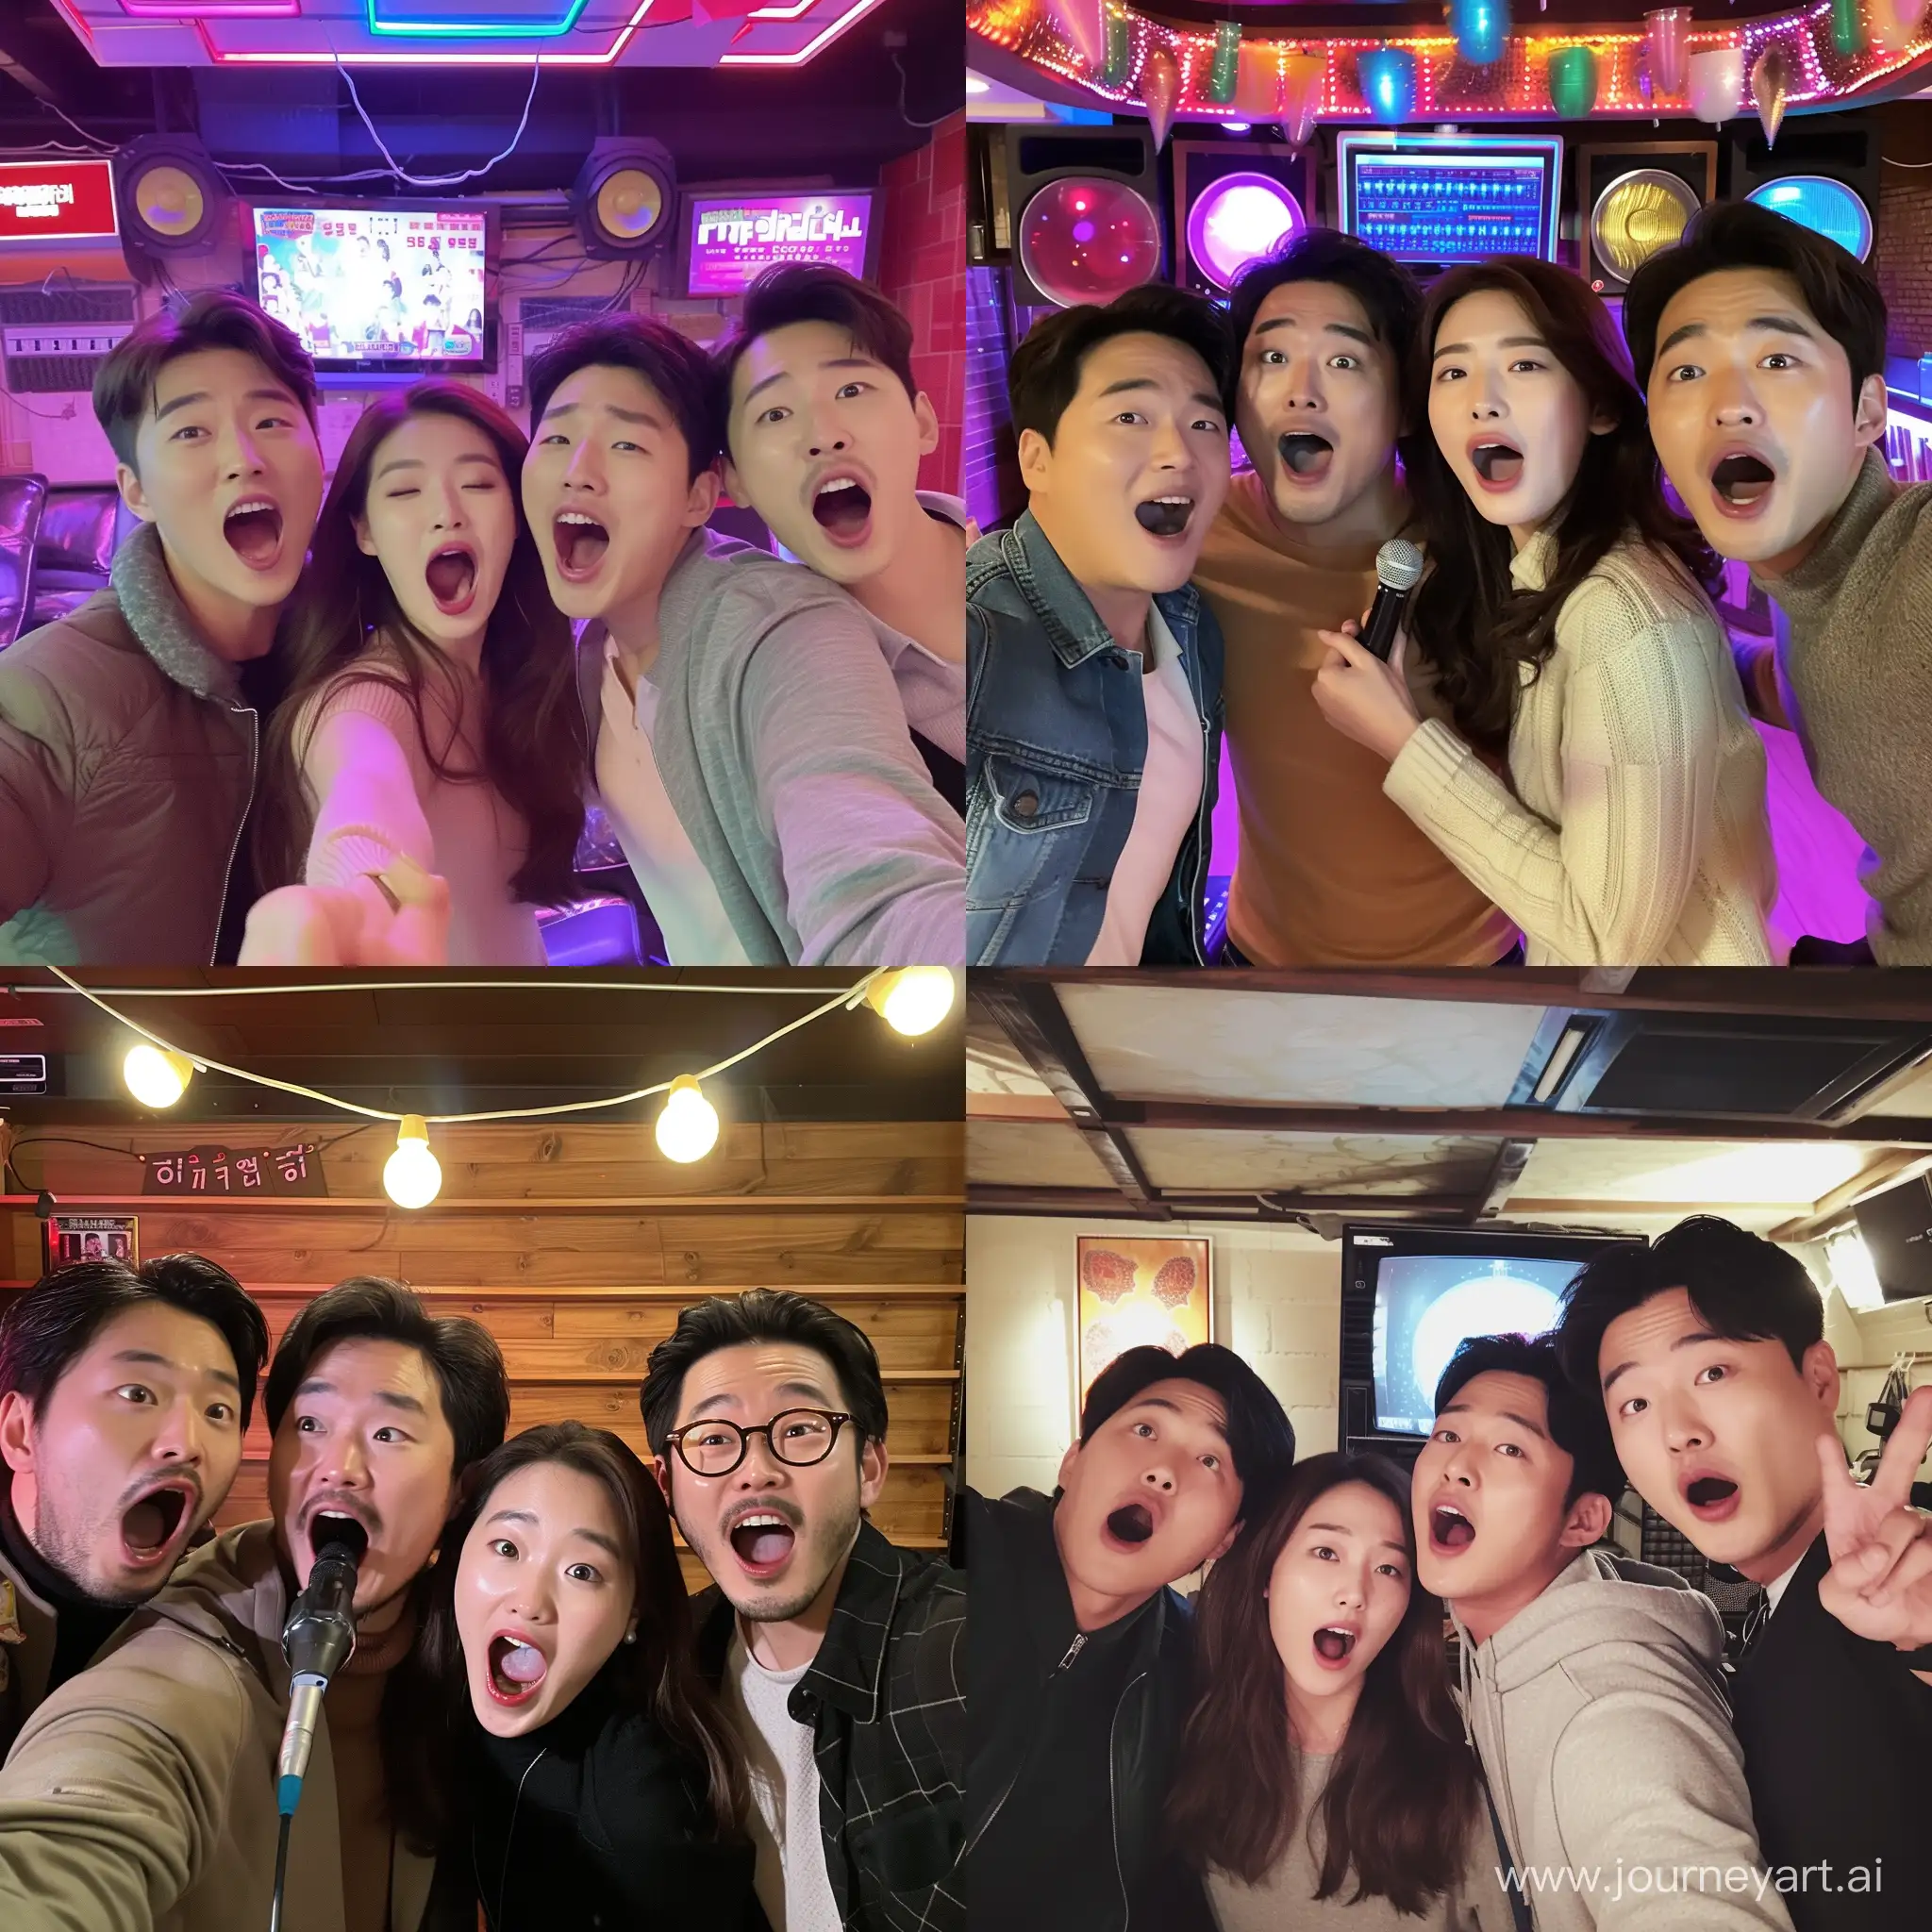 노래방에서 노래하는 한국 남자 3명과 여자 1명의 셀카 